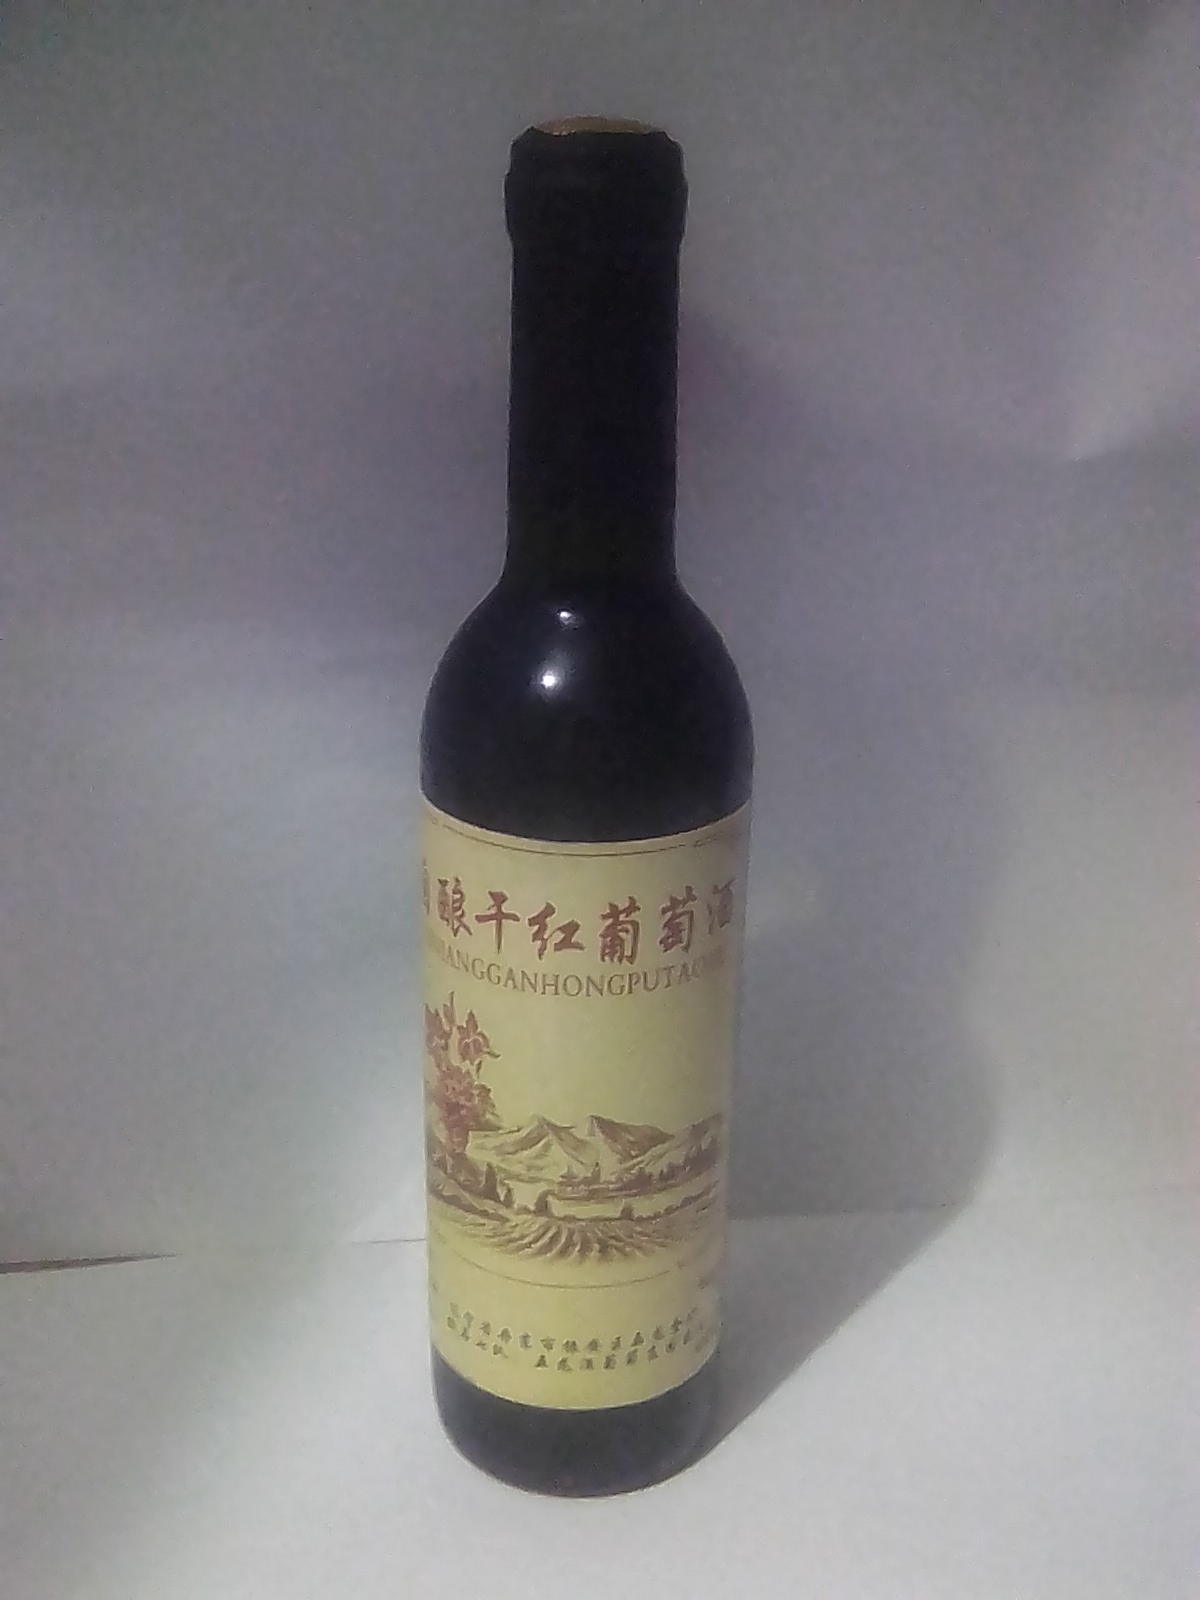 【红酒批发】红酒 10-15度价格39.8元\/瓶 2瓶起